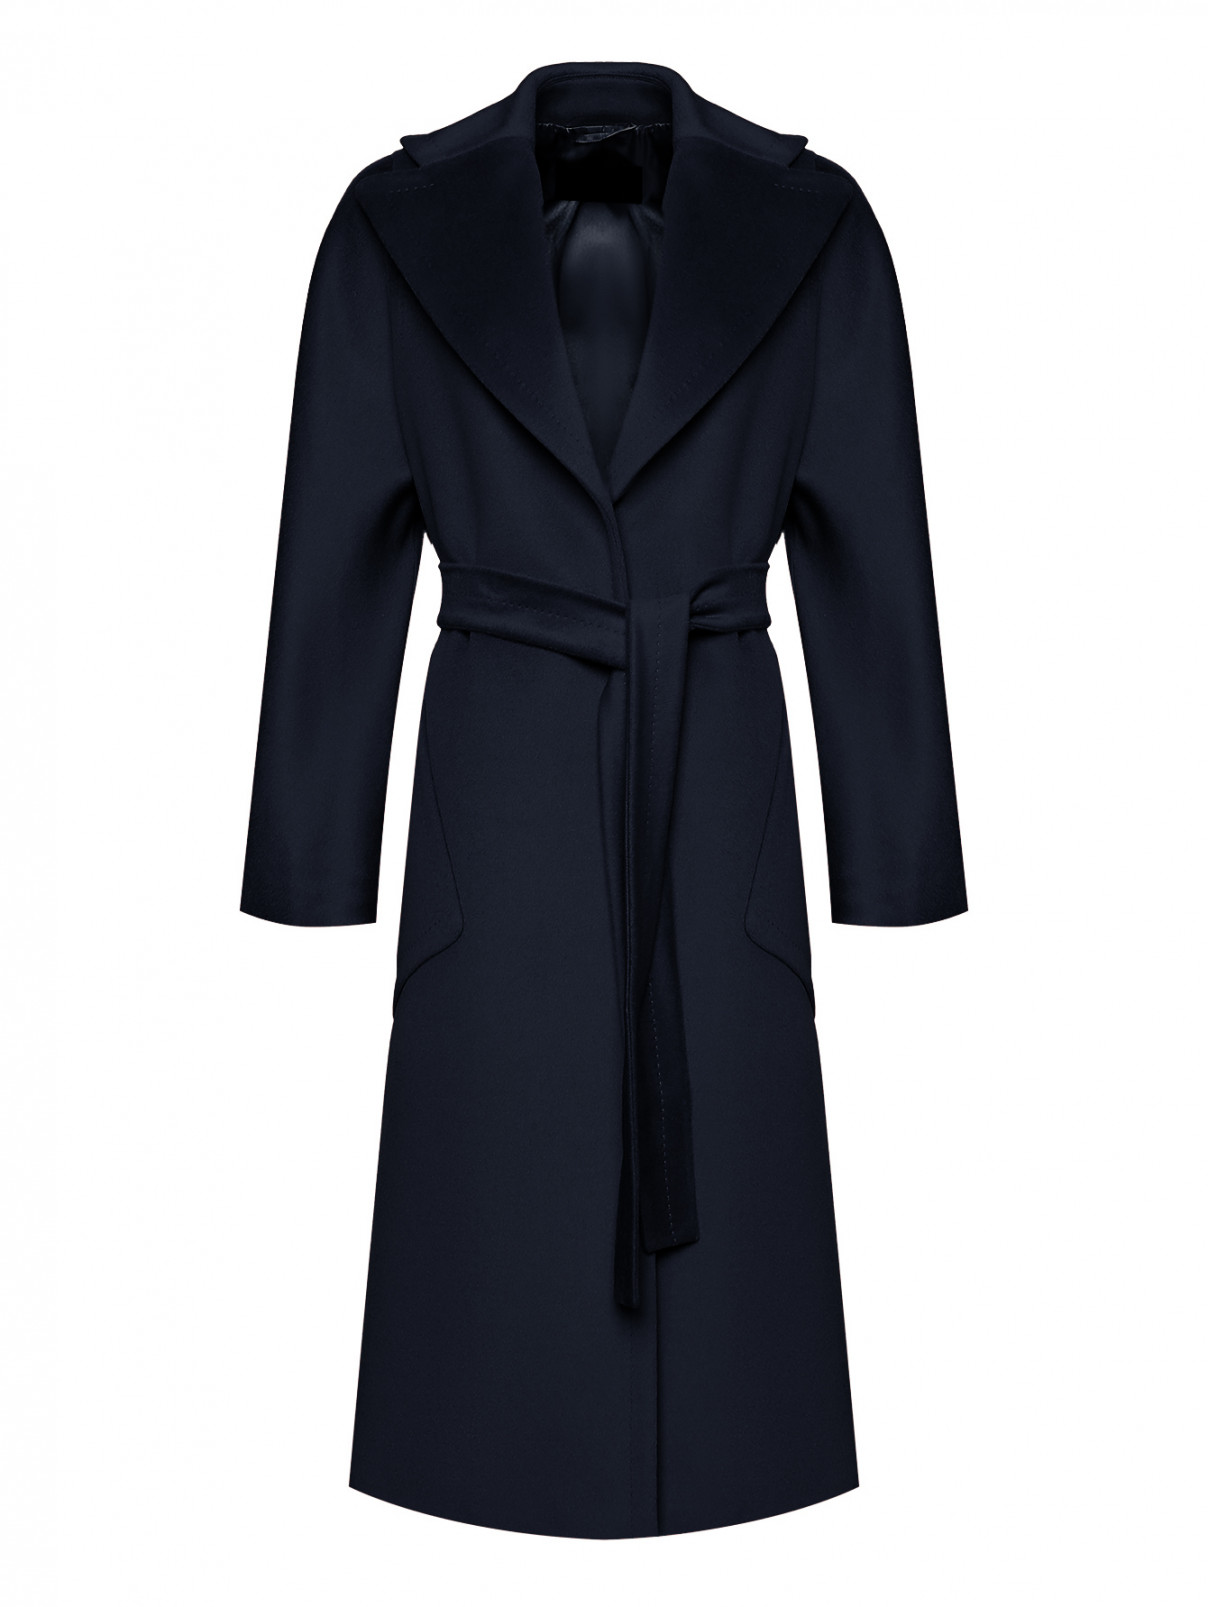 Пальто шерстяное с накладными карманами Marina Rinaldi  –  Общий вид  – Цвет:  Черный